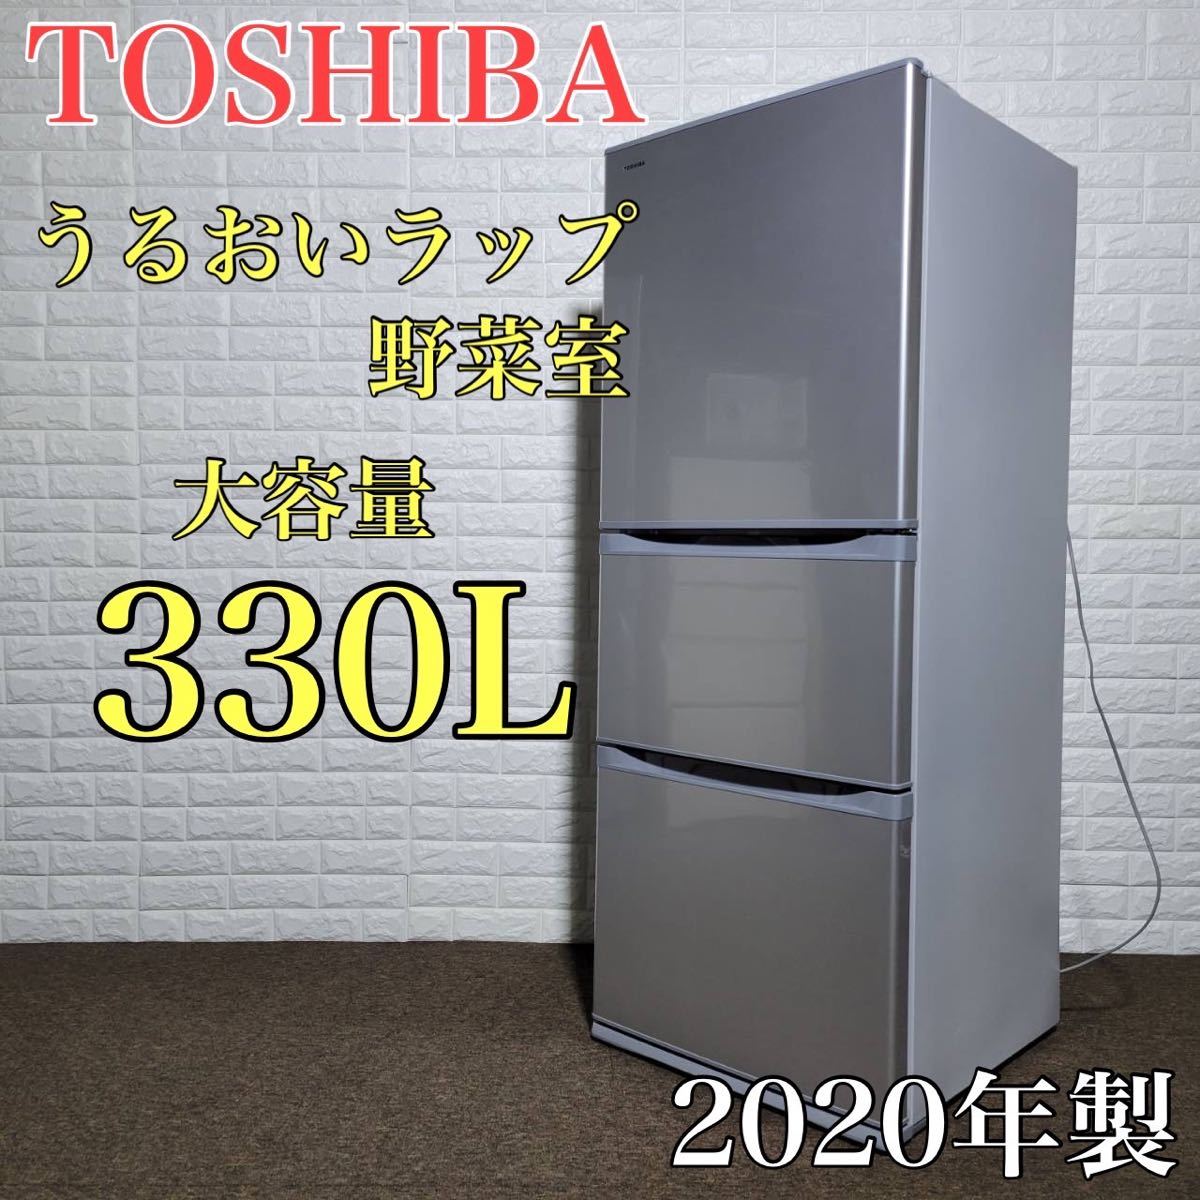 TOSHIBA 冷蔵庫 GR-R33S 大容量 330L 2020年 M0028-